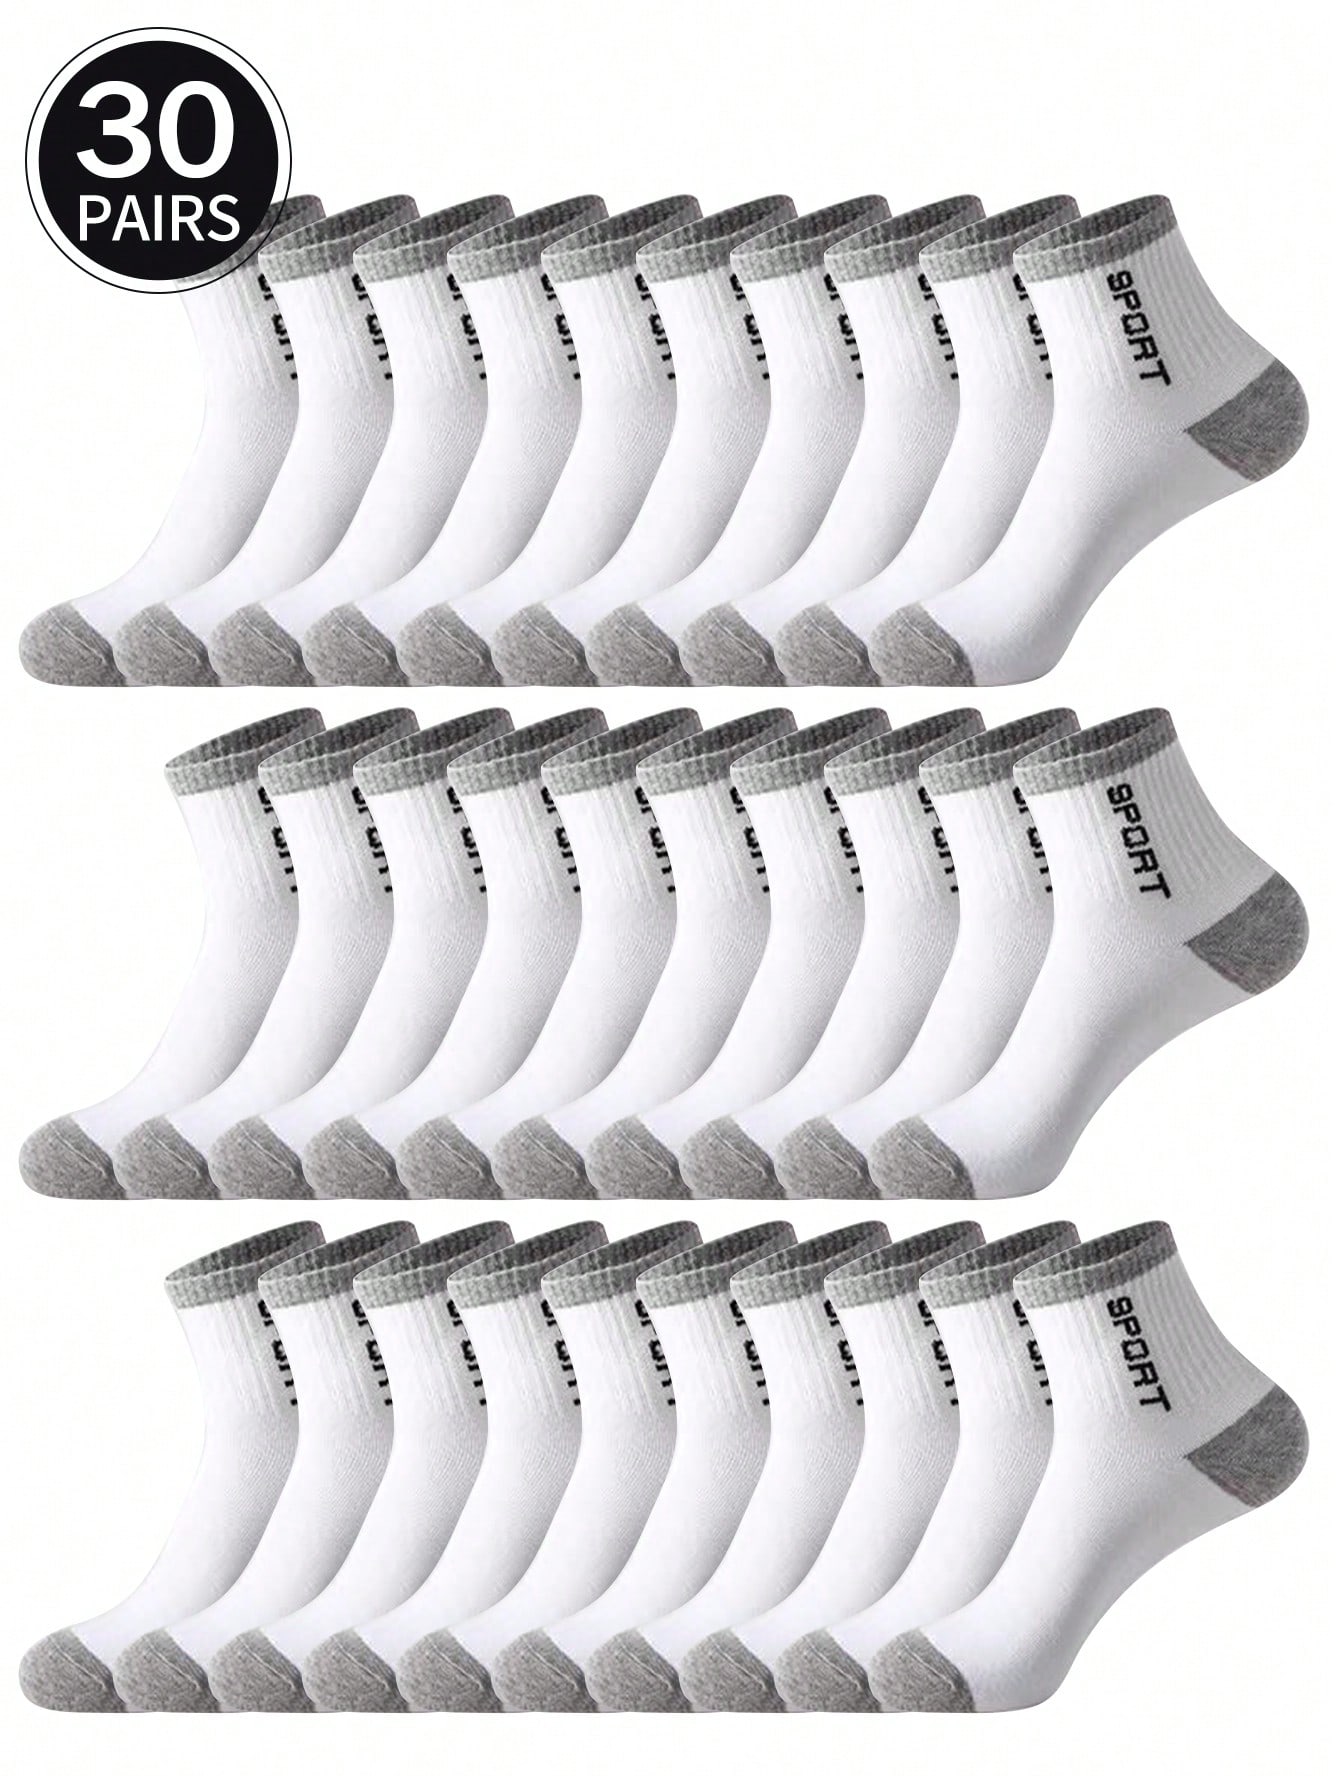 20 пар мужских носков средней длины, белый